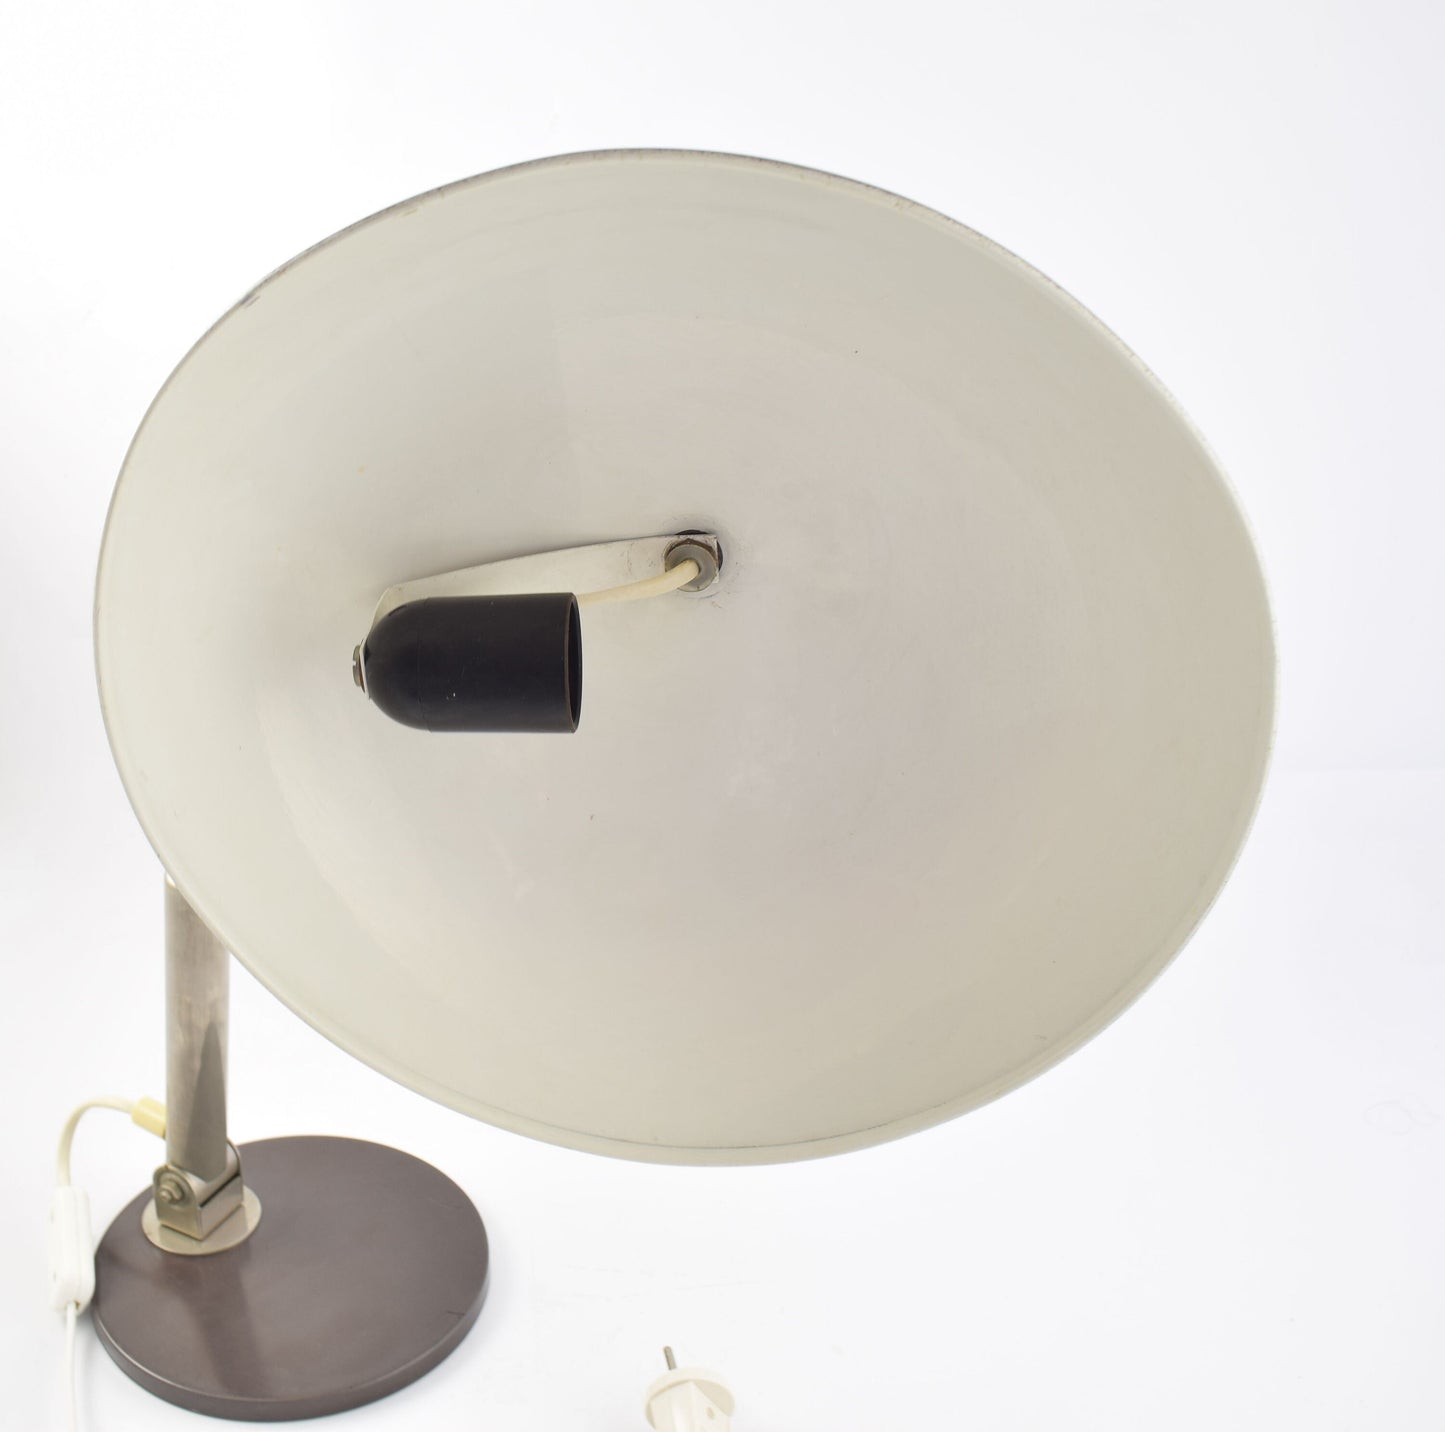 Lámpara de escritorio Hala Modelo 144 diseñada por Busquet, famosa lámpara de mesa de diseño cromado y marrón grisáceo oscuro procedente de los Países Bajos